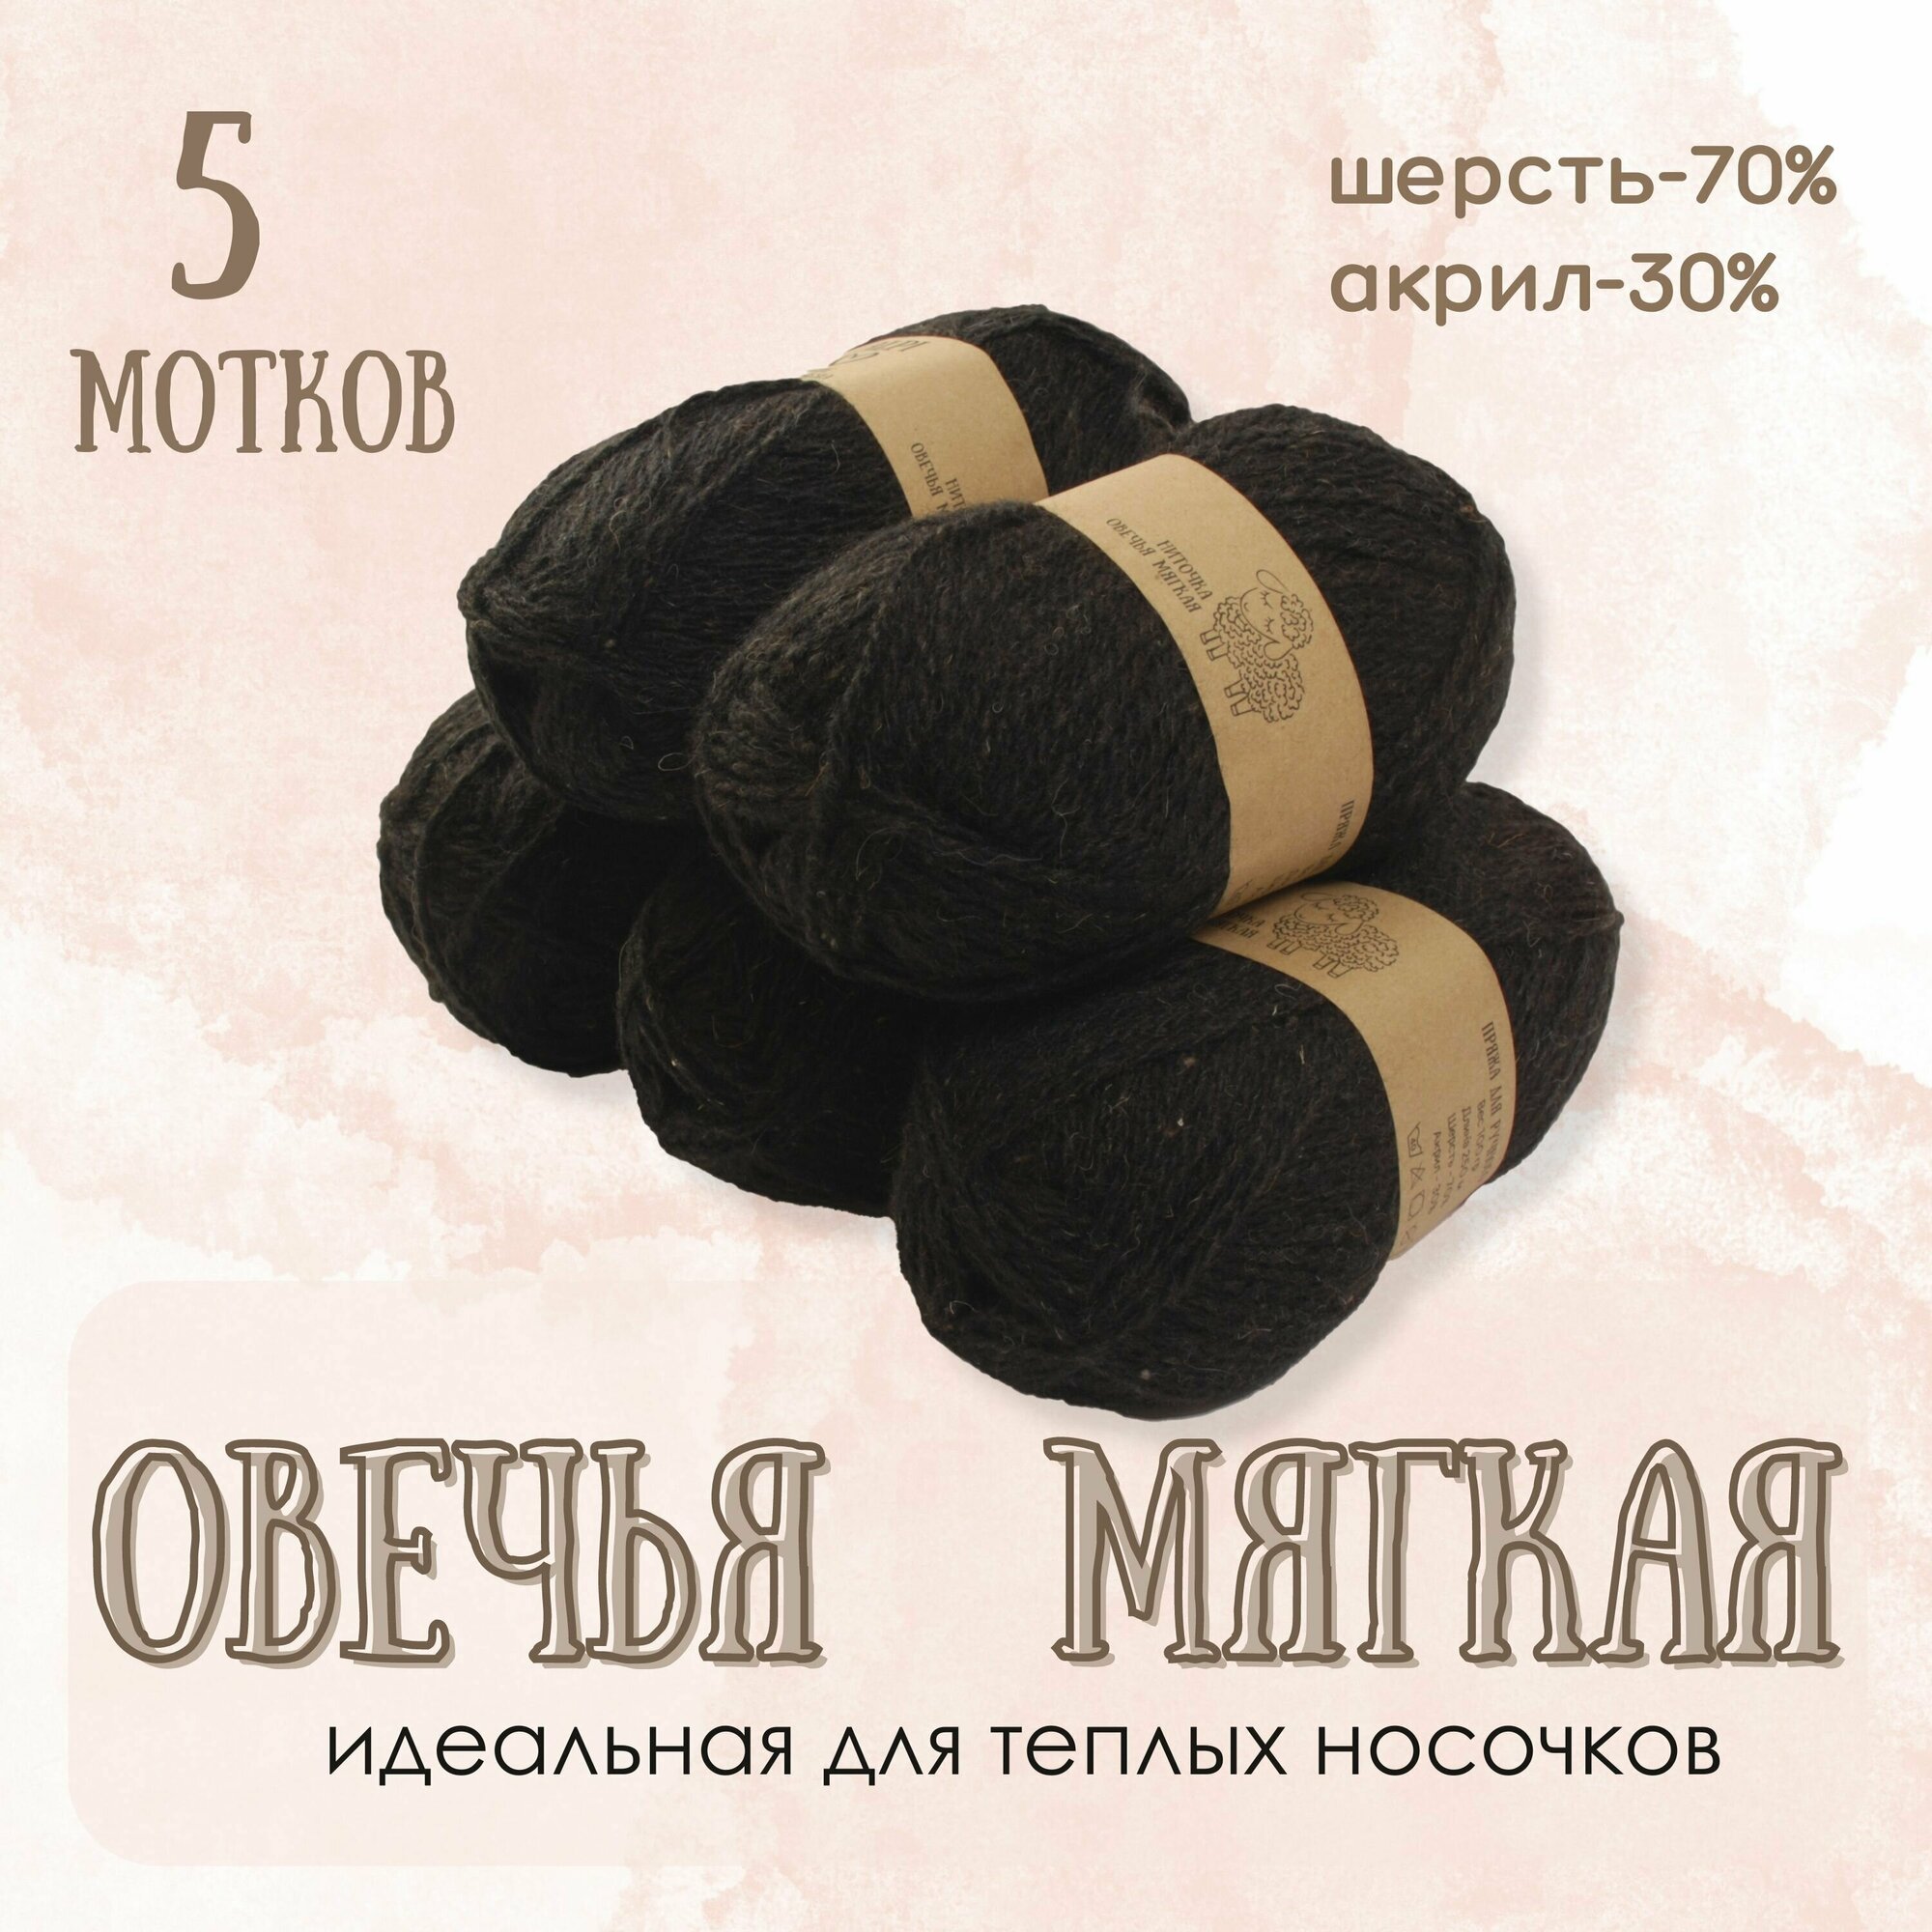 Пряжа для вязания ALPI "Овечья мягкая", 70% шерсть, 30% акрил, 100 г/250 м, черный, 5 мотков